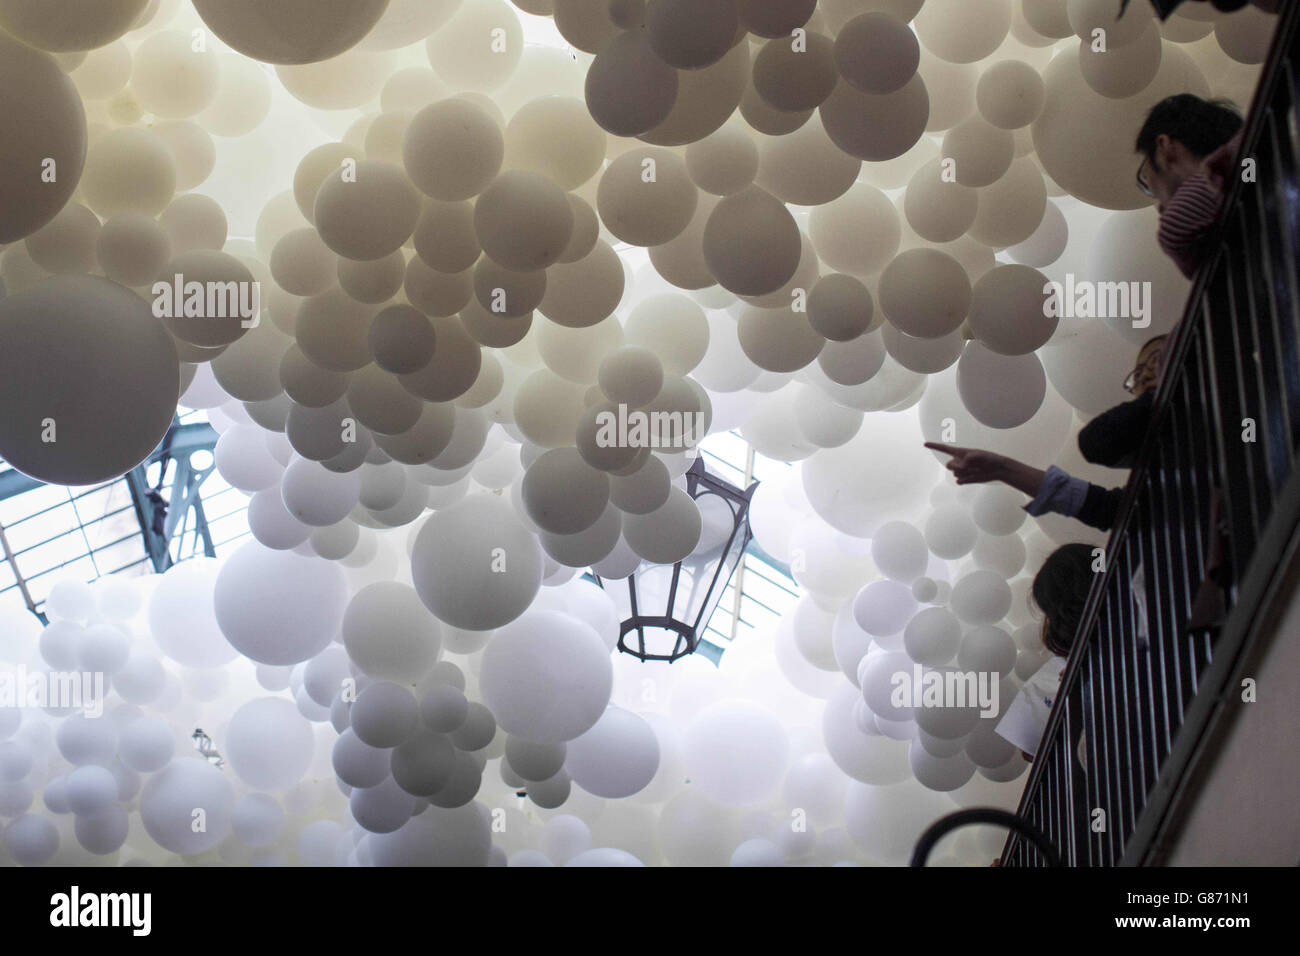 Die Besucher blicken auf Tausende von weißen Ballons, die im Rahmen einer Installation des französischen Künstlers Charles Pestillon in der South Hall of Covent Garden Market im Zentrum Londons platziert wurden. Stockfoto